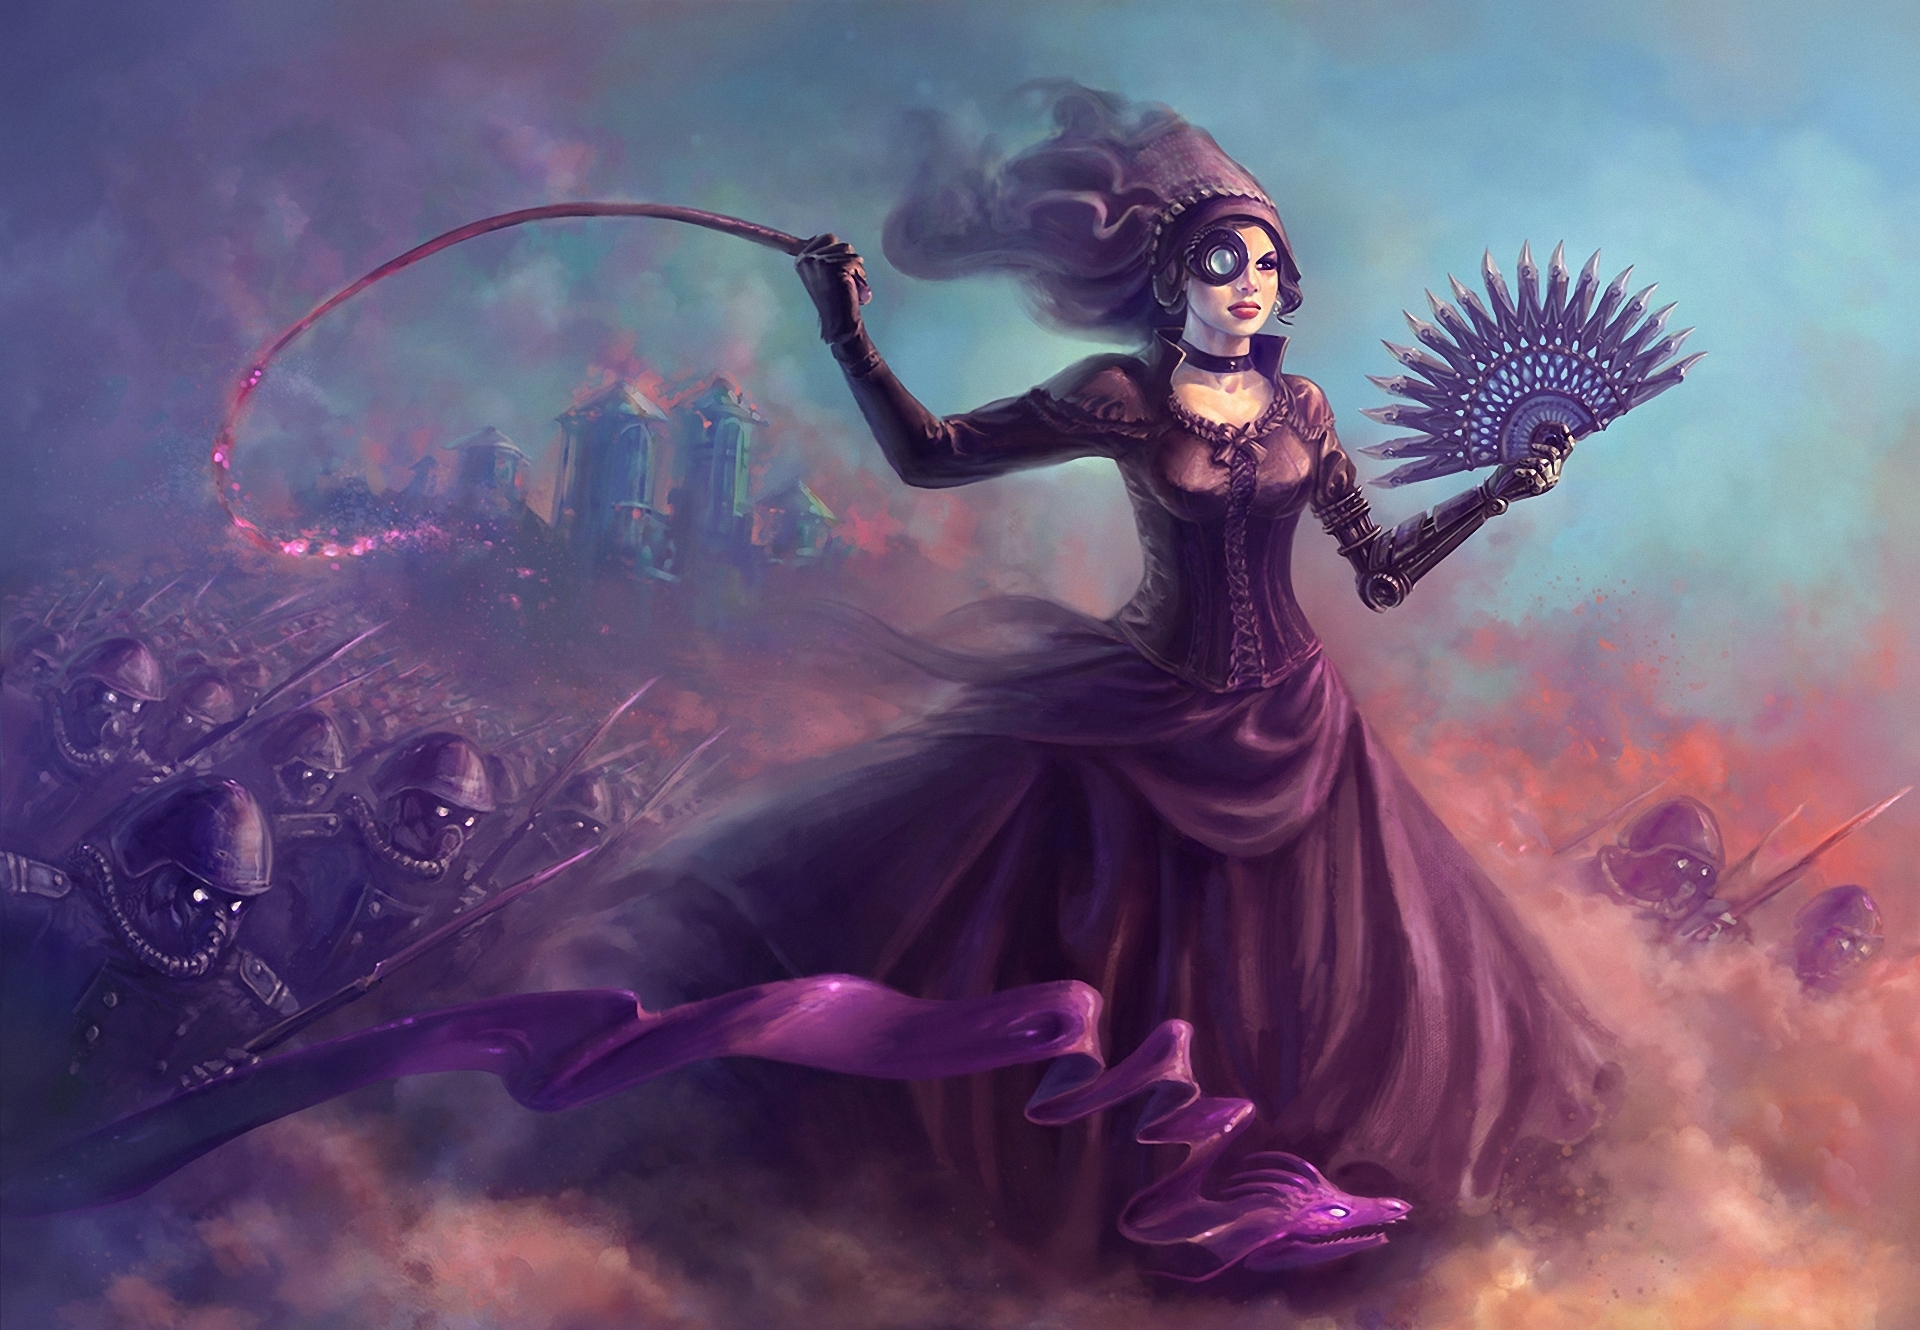 Fantasy Woman Warrior by Lelyk777